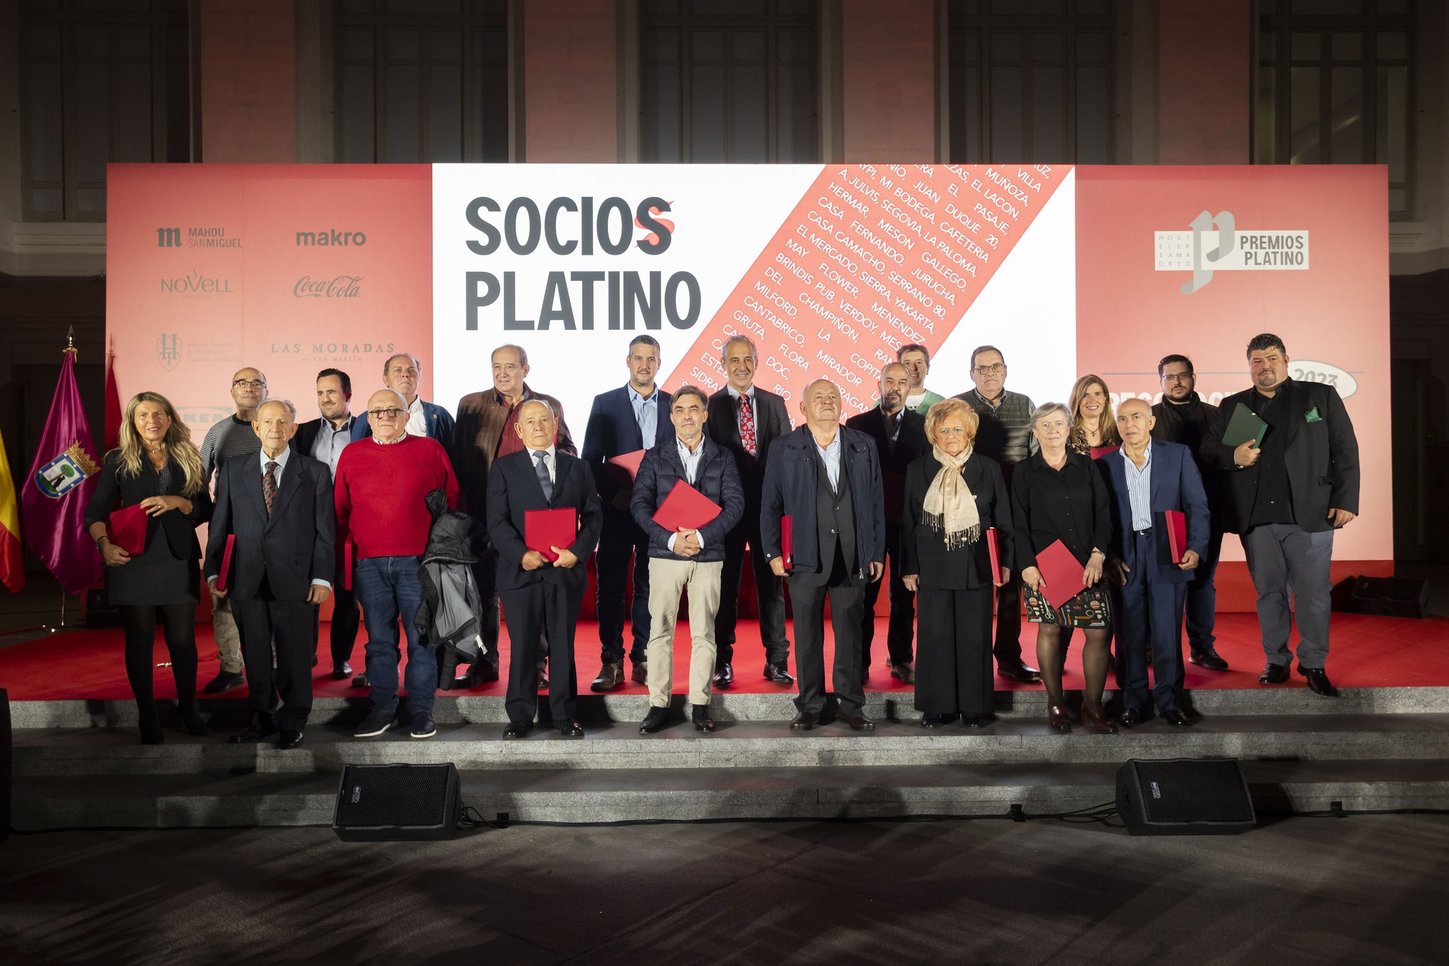 Hostelería Madrid celebra los I Premios Platino con la entrega de 25 galardones a los asociados que llevan más de 40 años en la asociación - La Viña